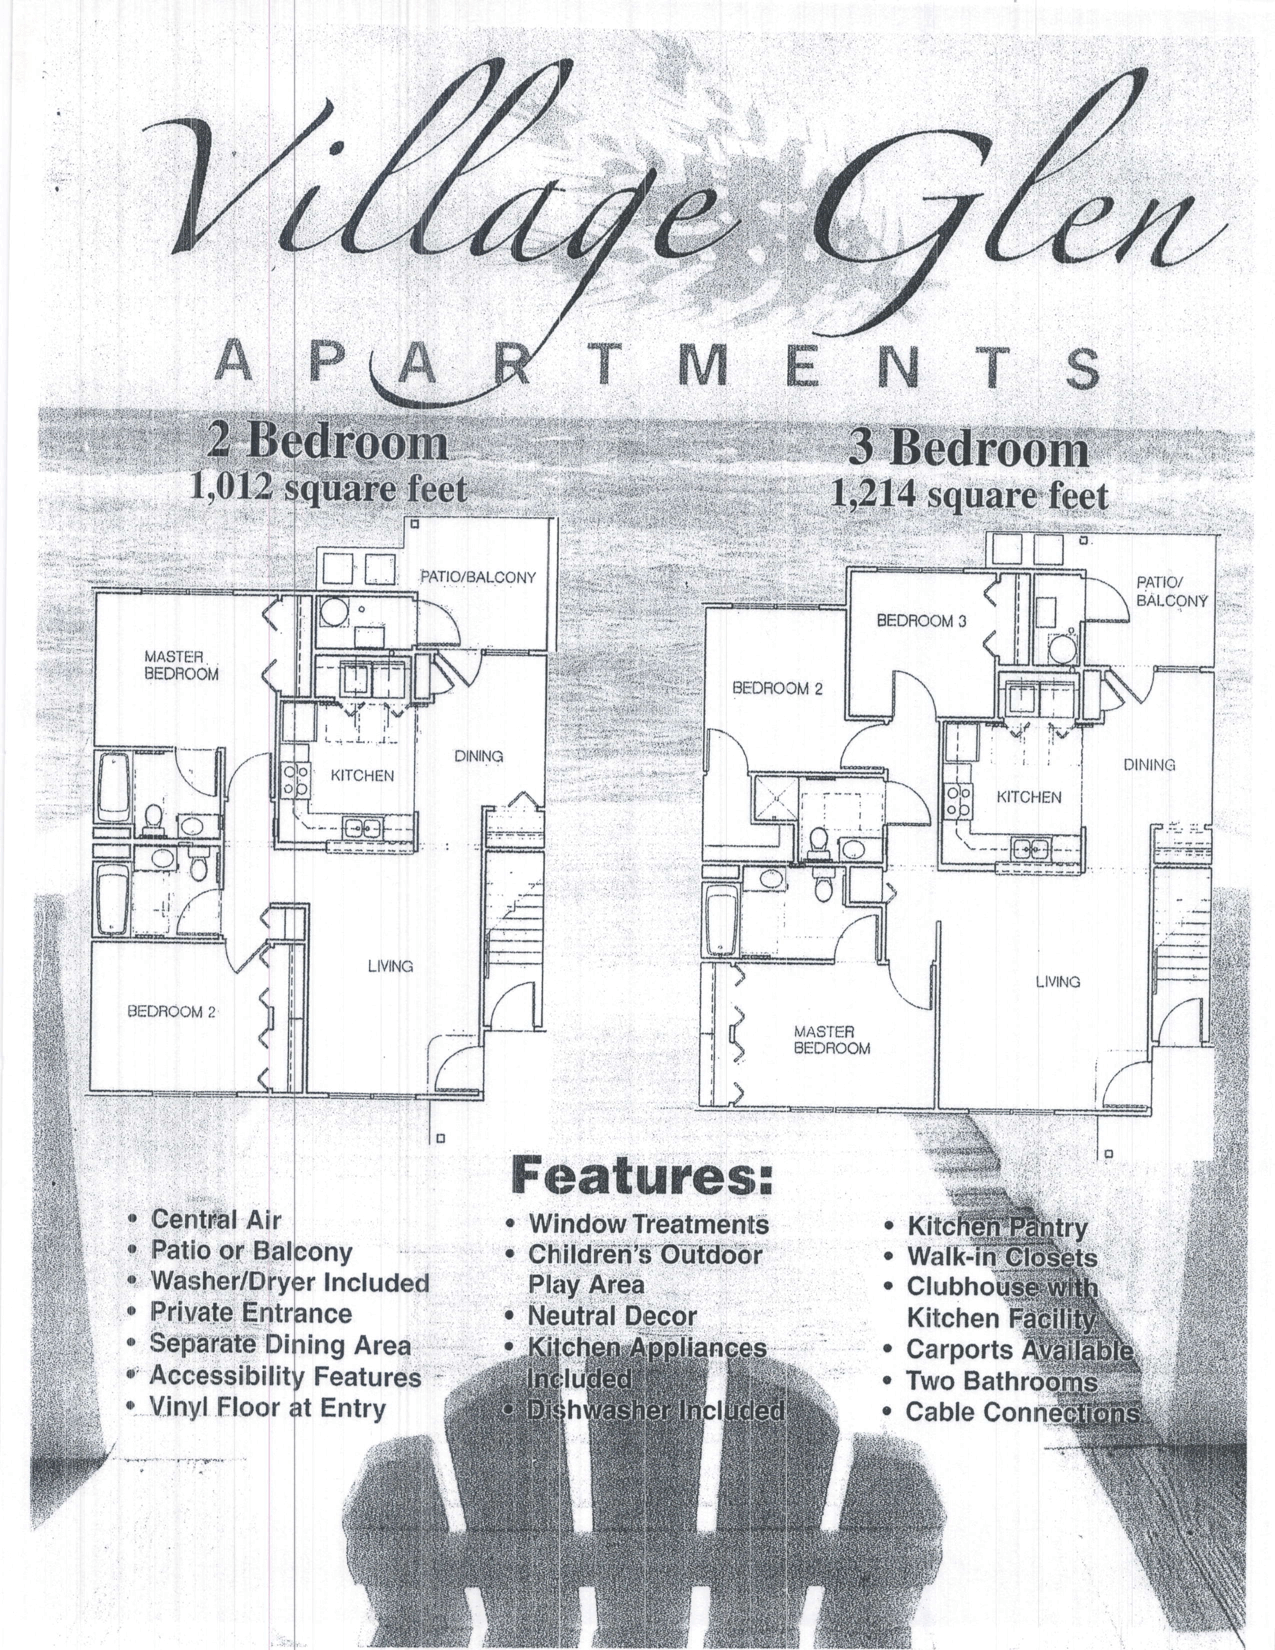 Village Glen image